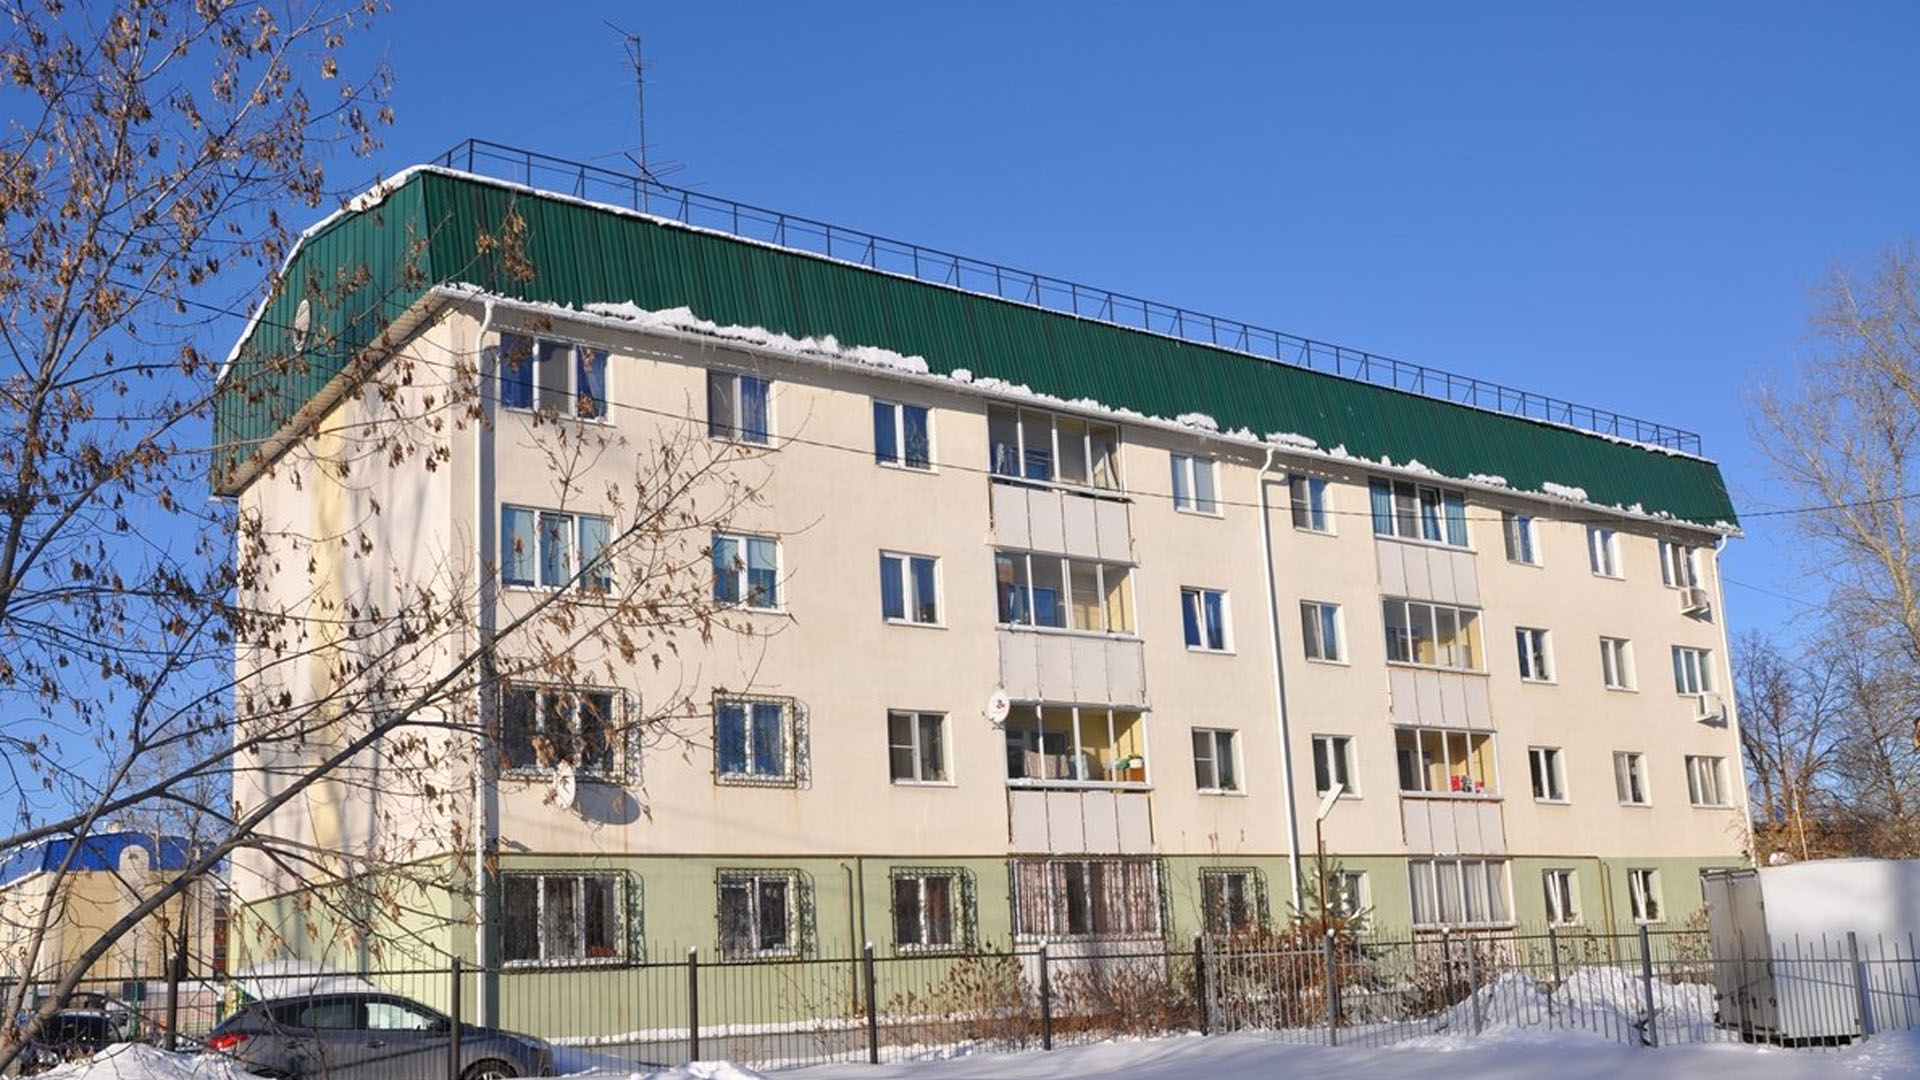 Управляющая компания УЖК ЖКО-Екатеринбург украла у жильцов дома дорогостоящее оборудование по учету потребления тепла